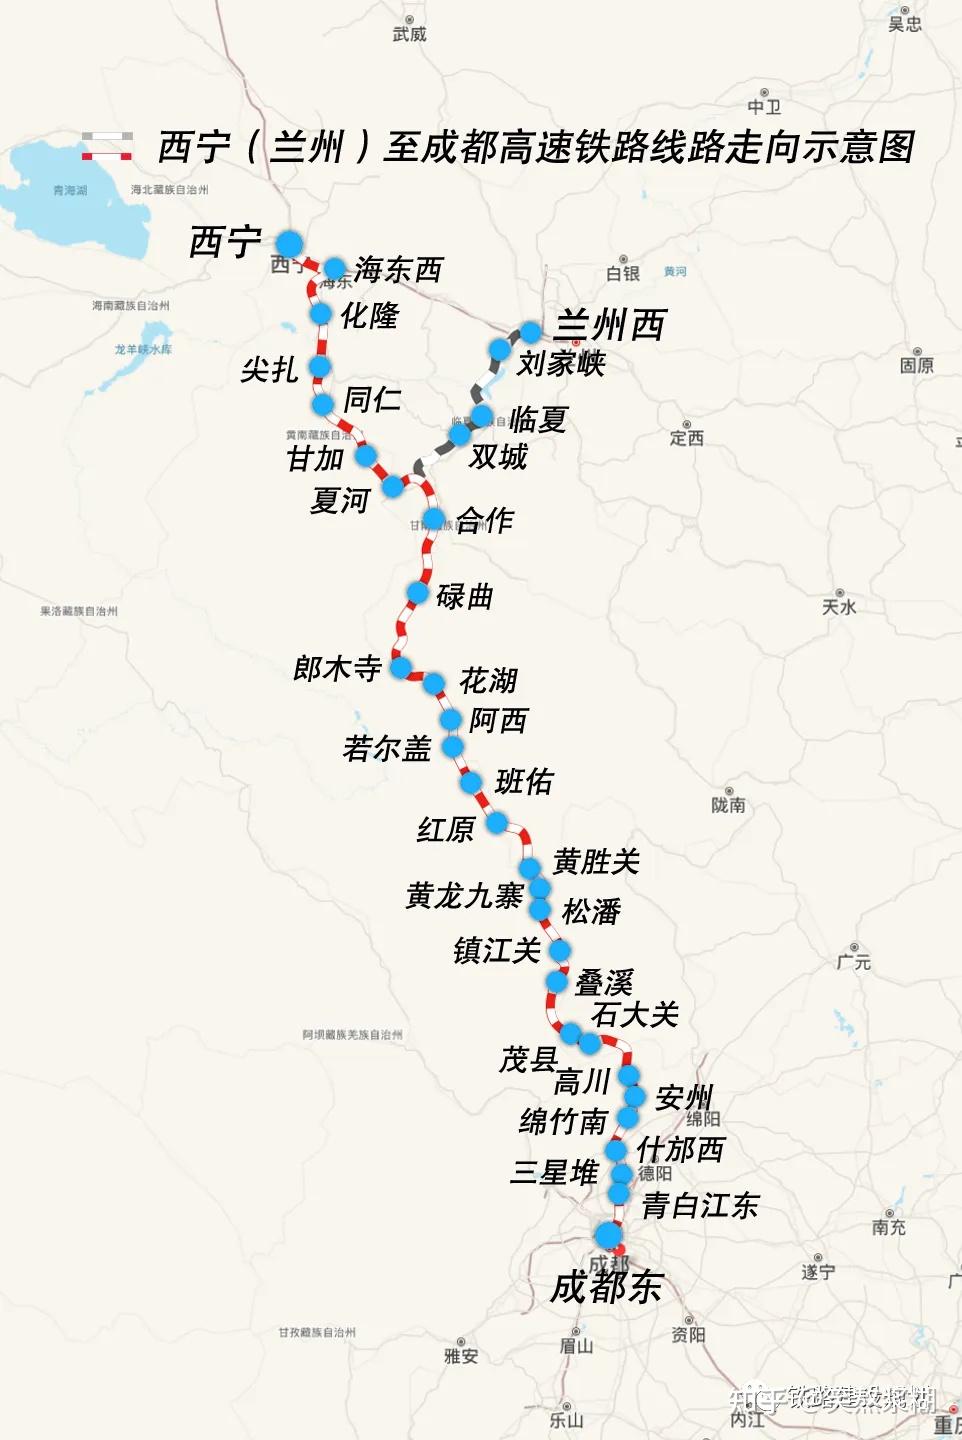 西宁至成都铁路四川段5座车站站房工程施工单位即将敲定